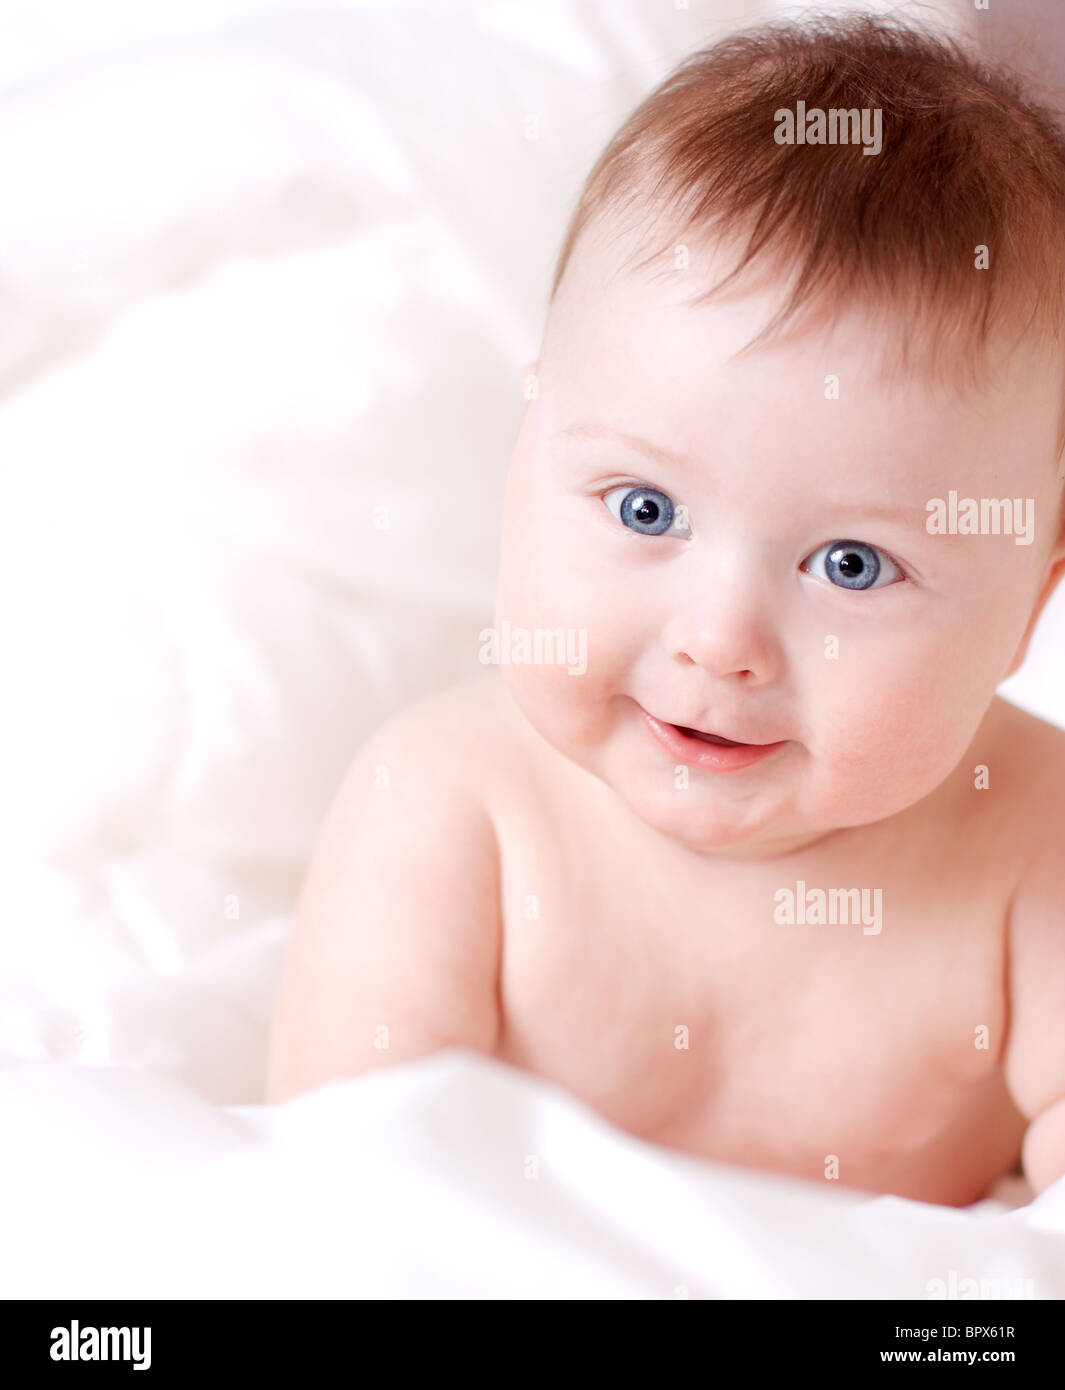 beautiful smiling baby boy on white badsheet Stock Photo - Alamy